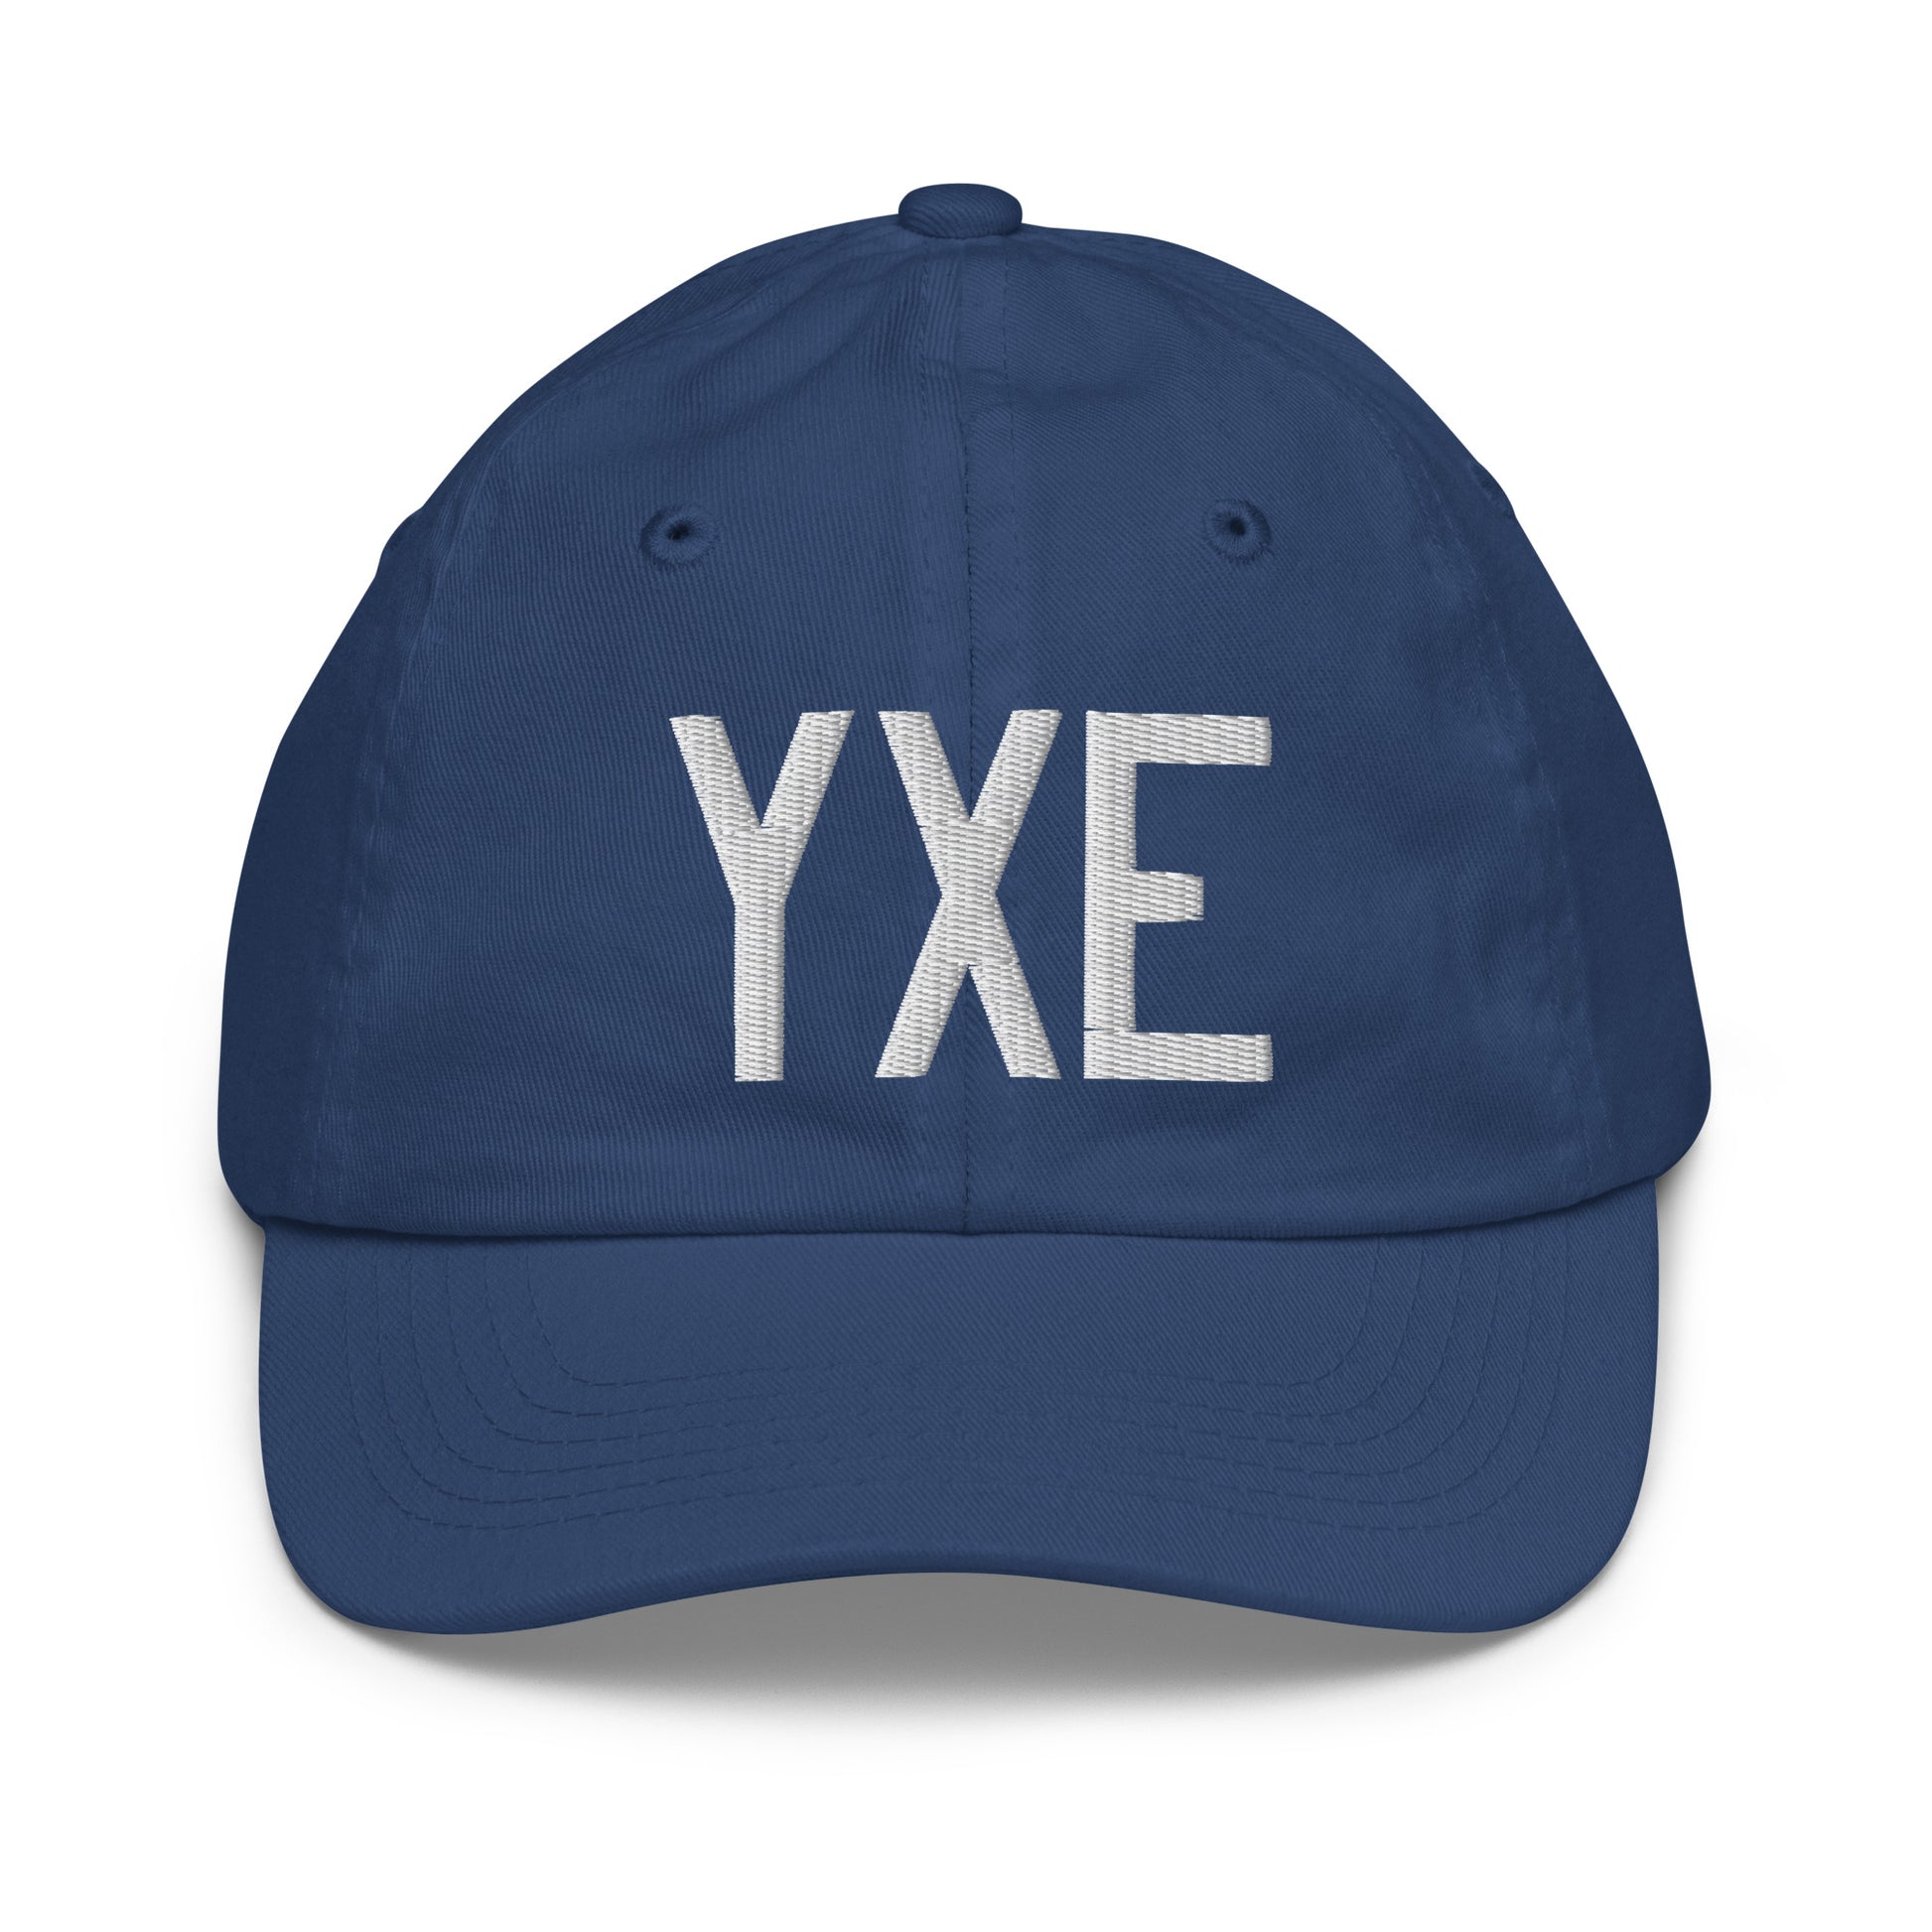 Airport Code Kid's Baseball Cap - White • YXE Saskatoon • YHM Designs - Image 20